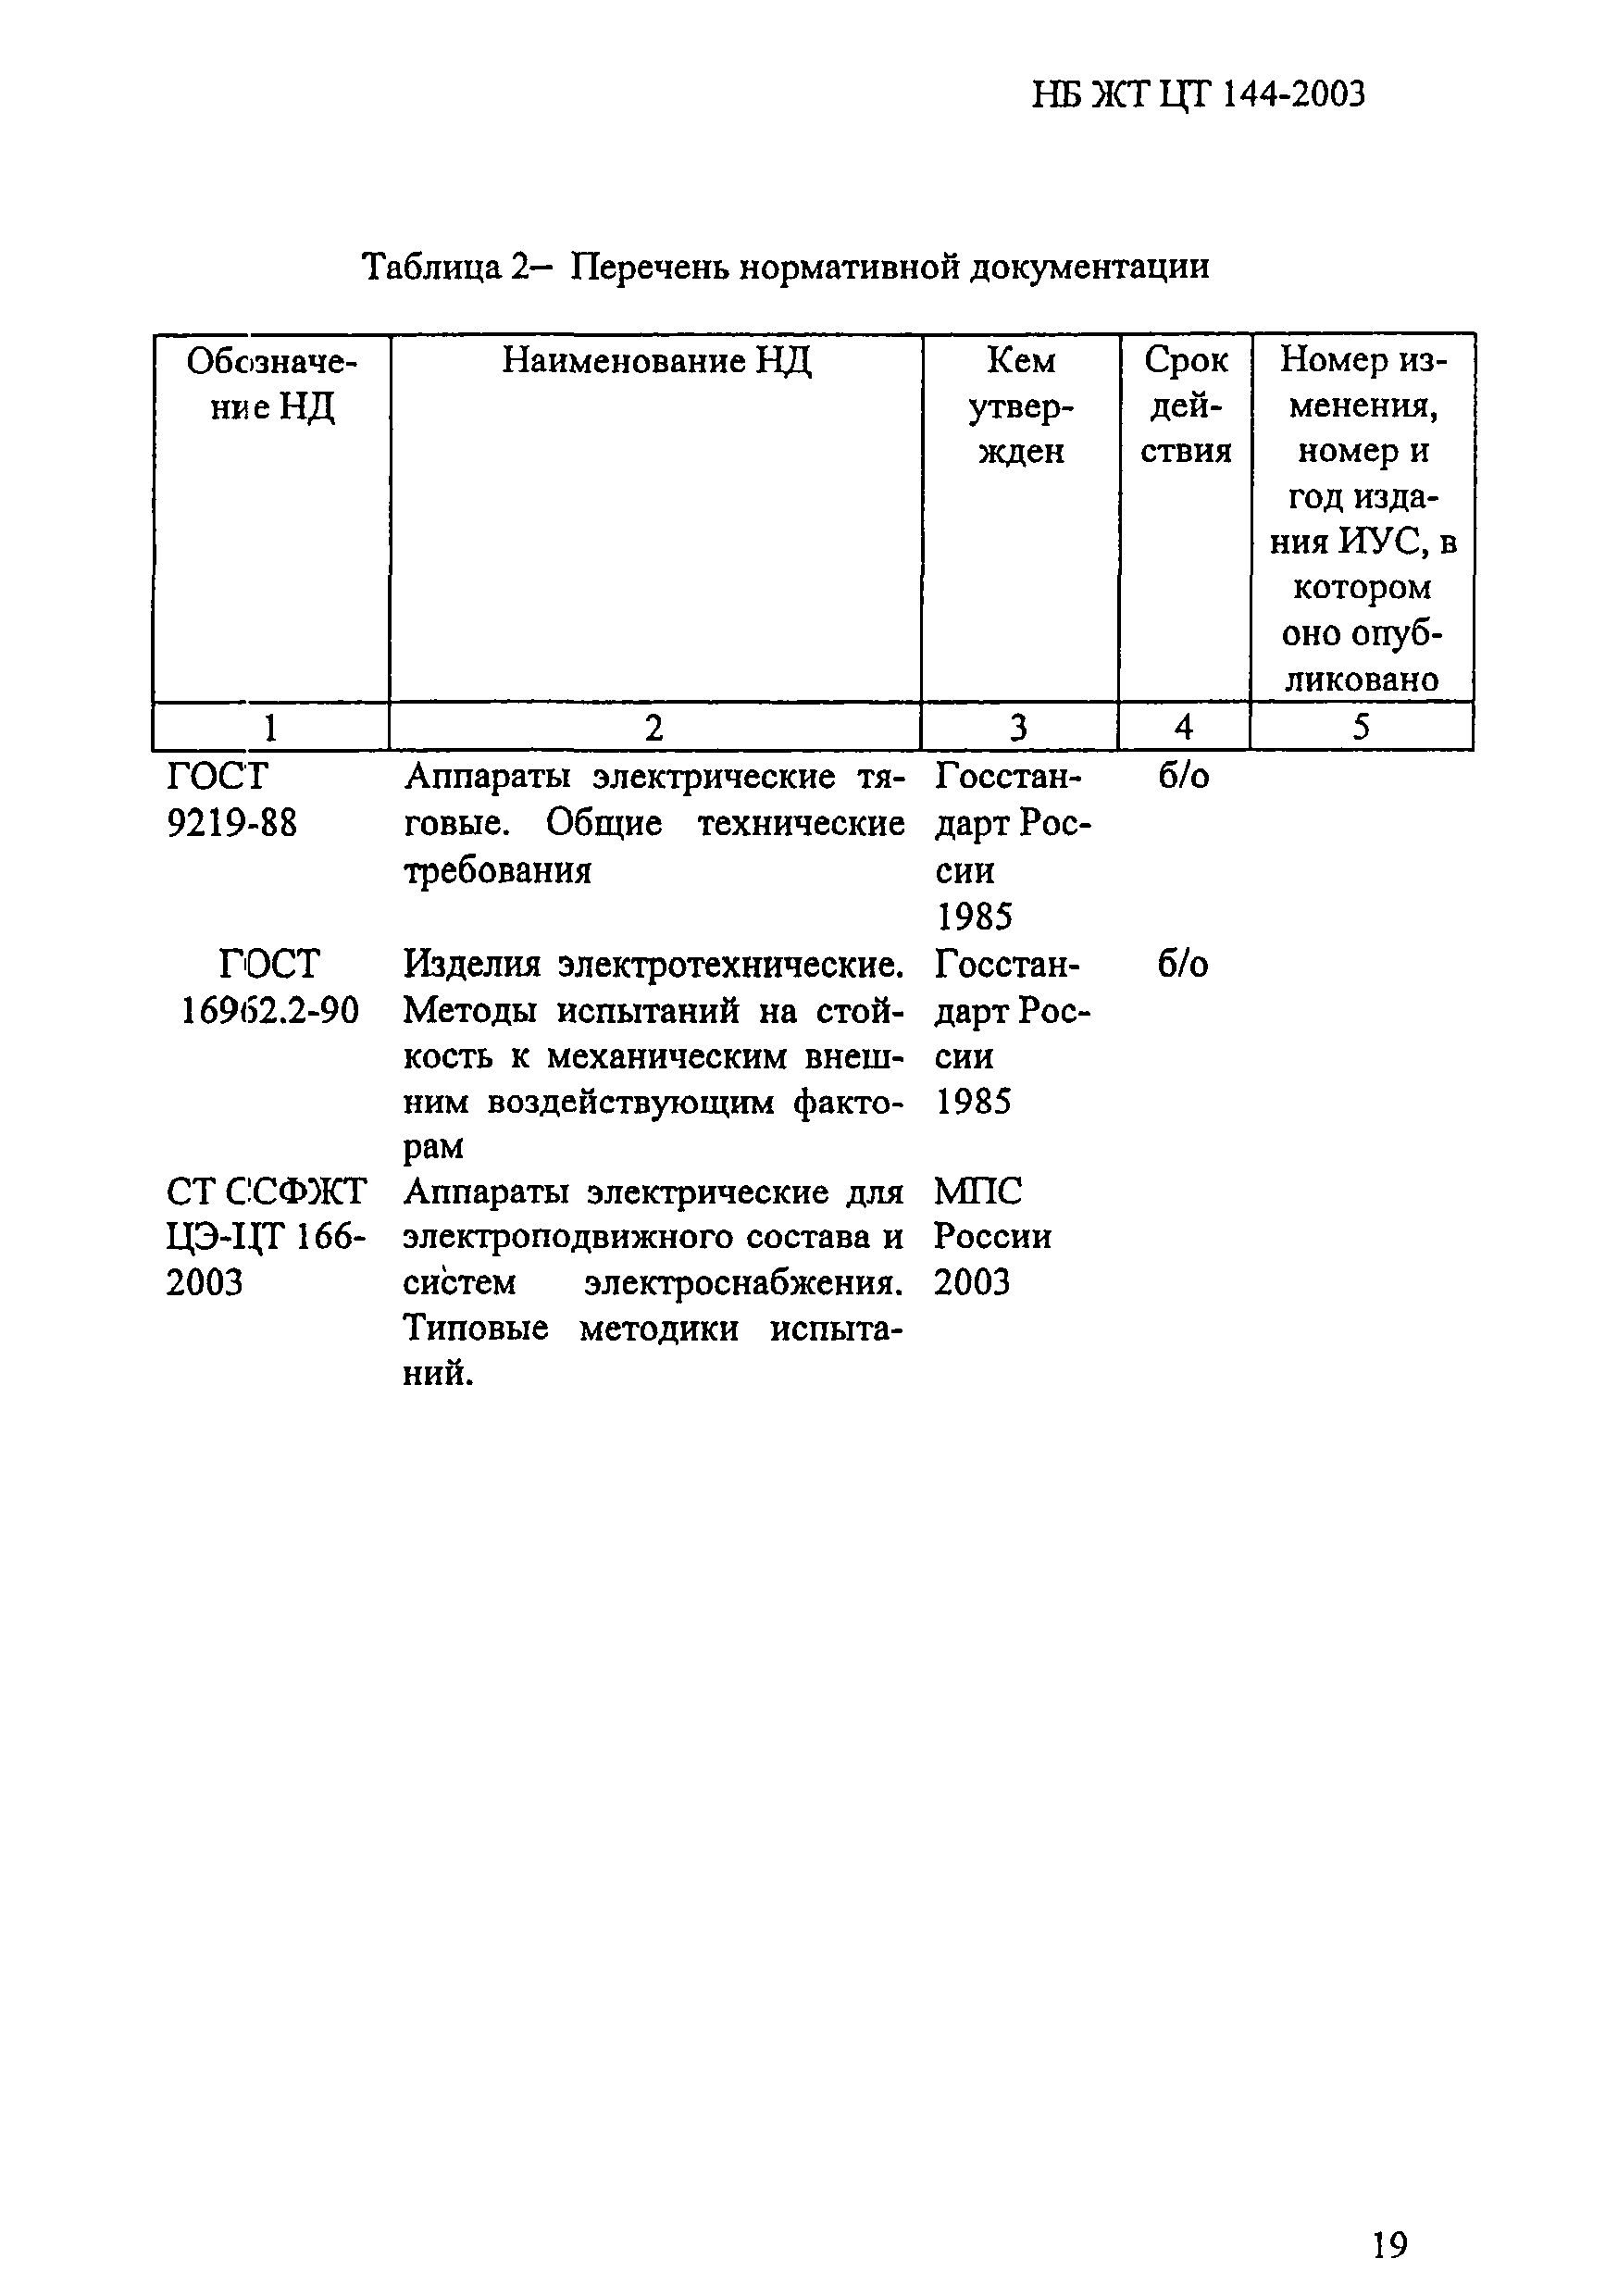 НБ ЖТ ЦТ 144-2003